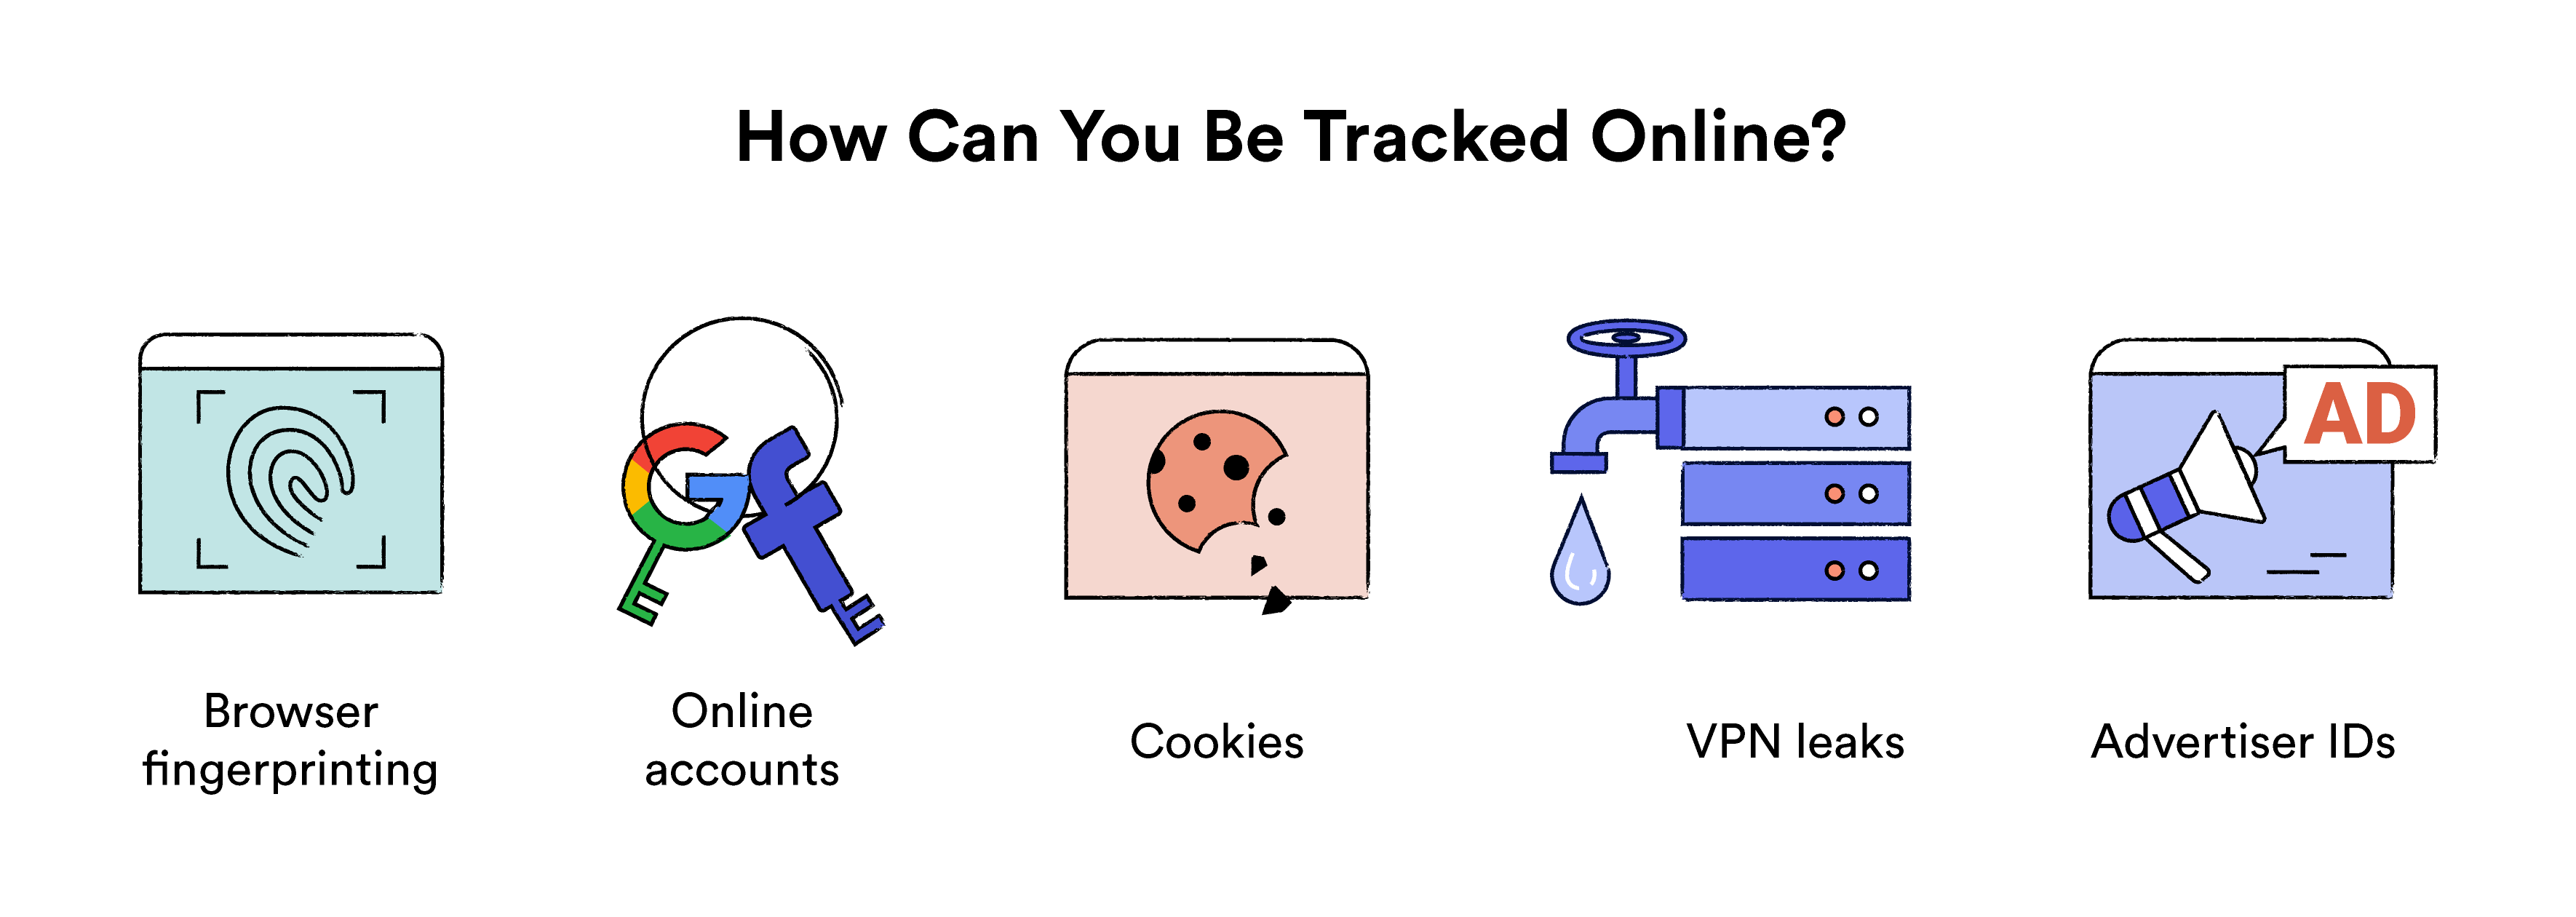 Ilustrace ukazující, jak můžete být sledováni online.